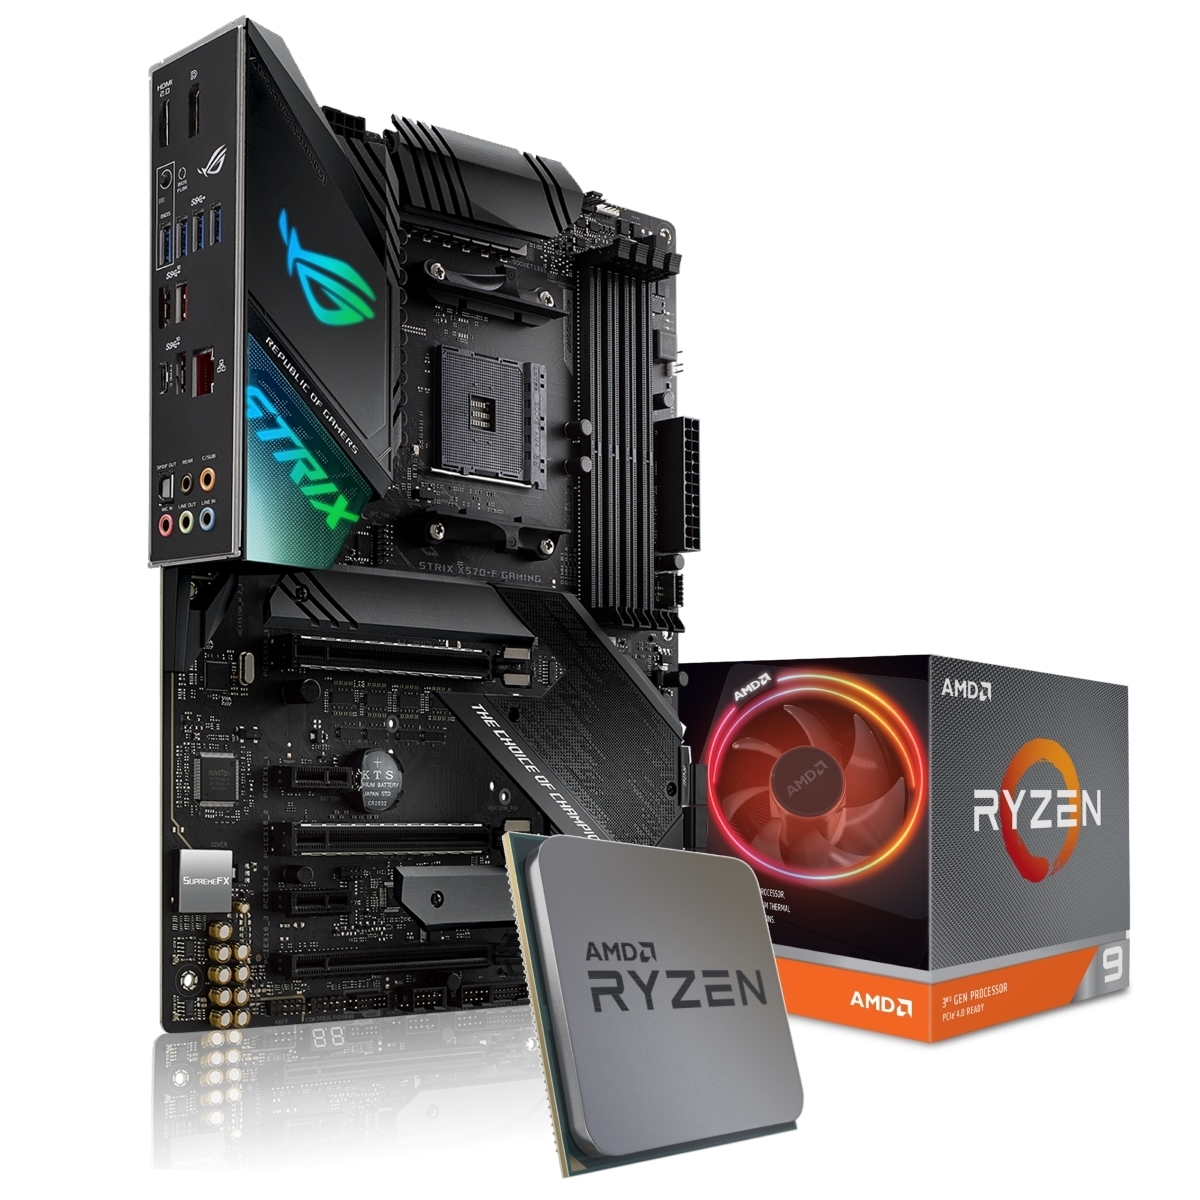 ASUS ROG Strix X570-F Gaming Mainboard + AMD Ryzen 9 3900X CPU von Asus